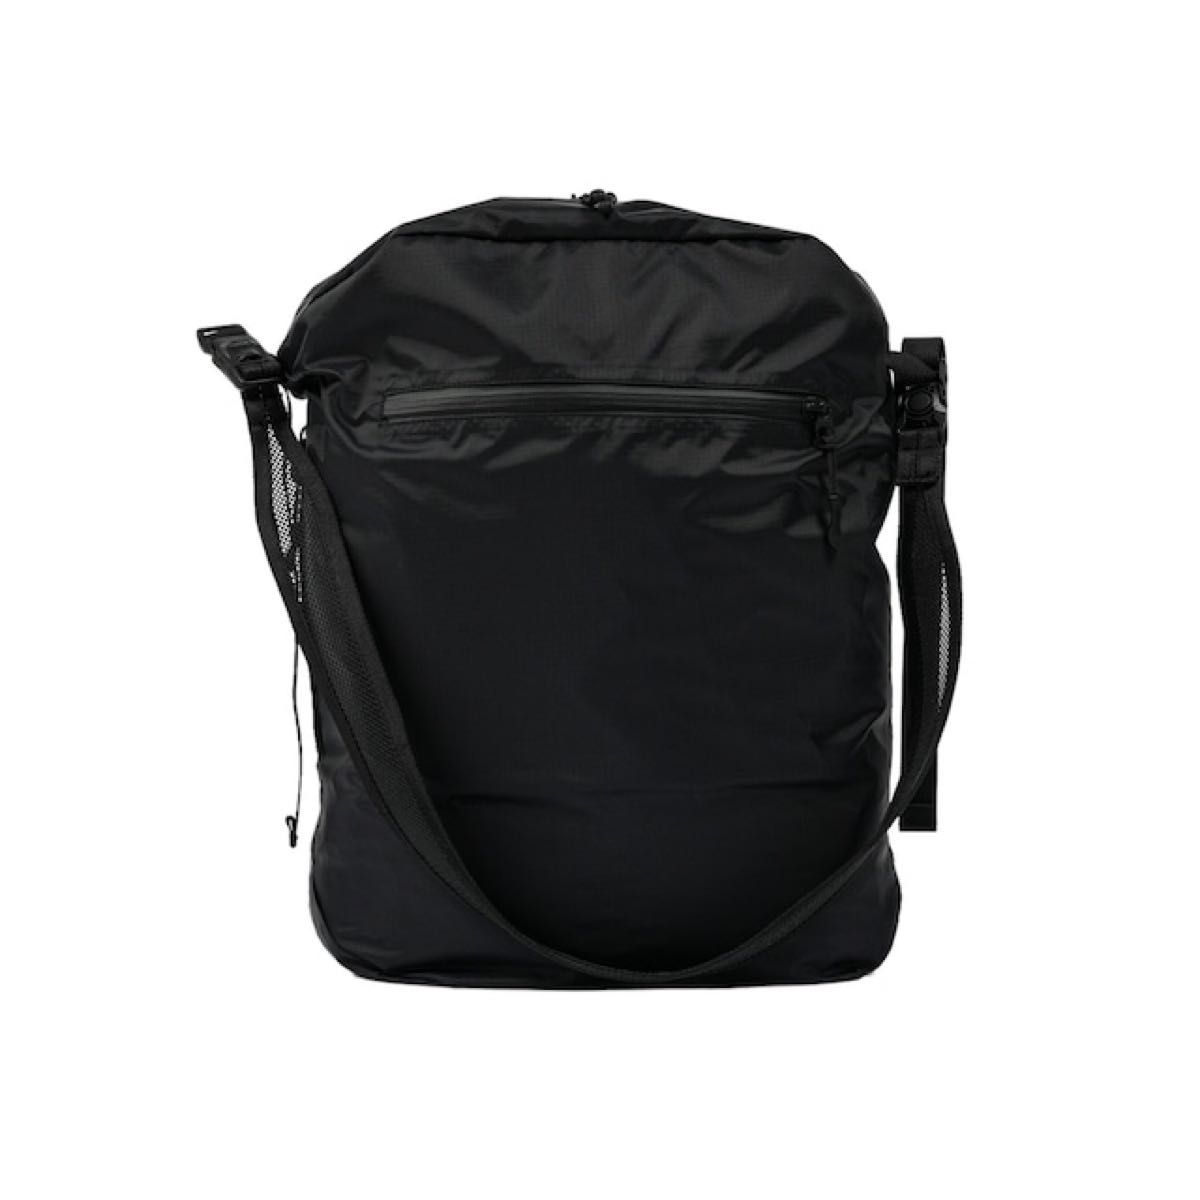 OVY Nylon Lightweight 2Way Shoulder Bag (large)